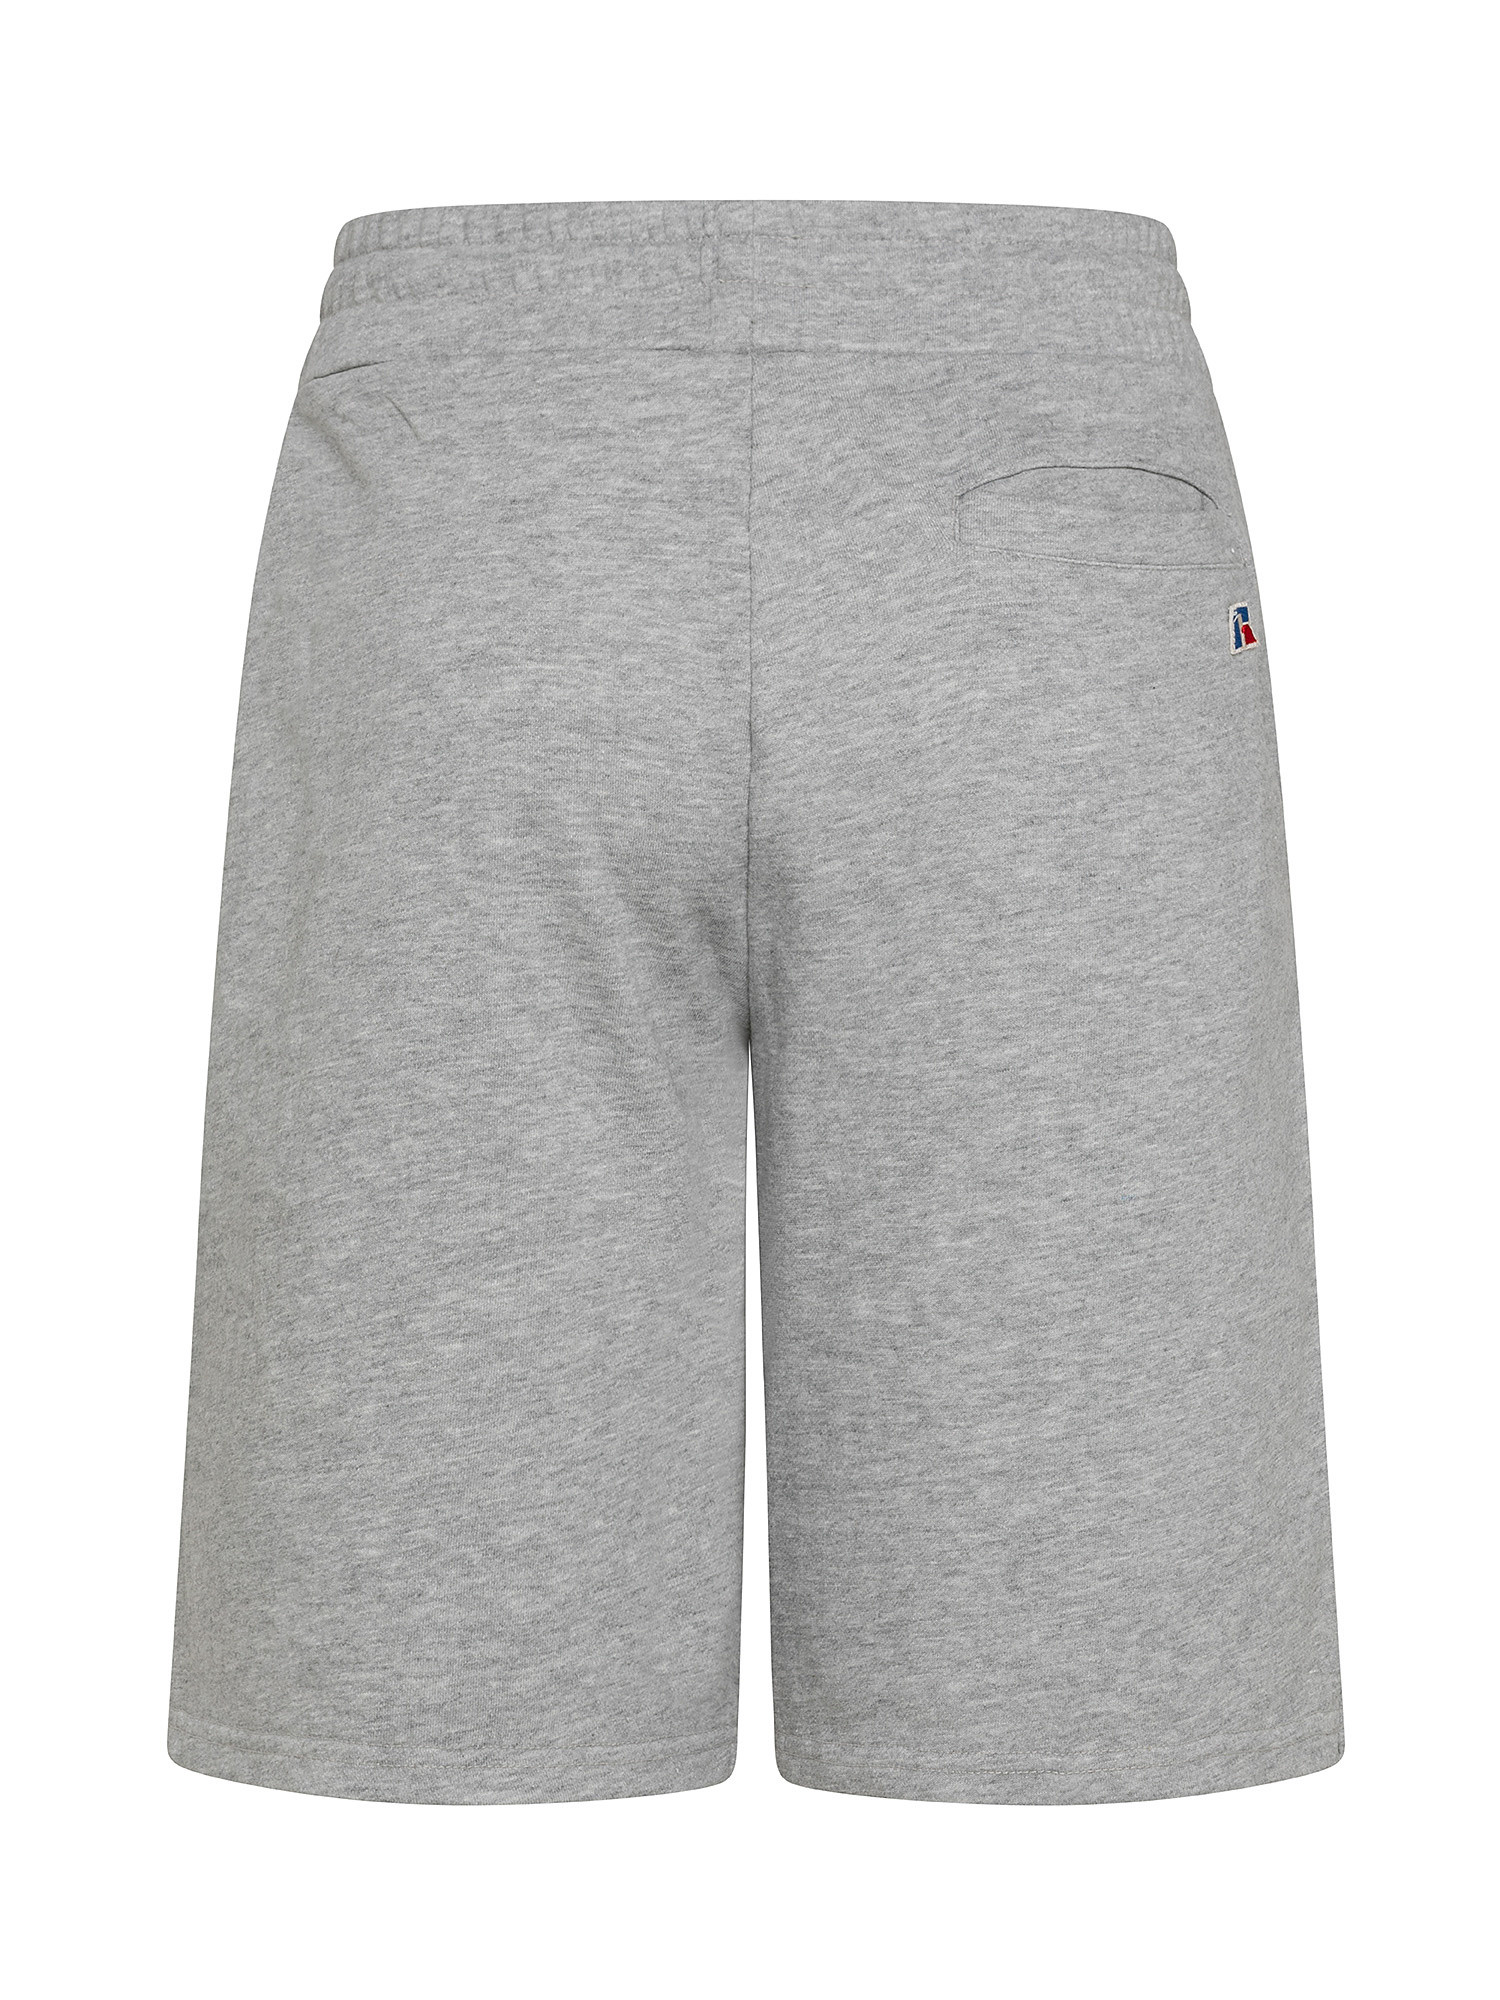 Baseball Shorts Save, Grey, large image number 1